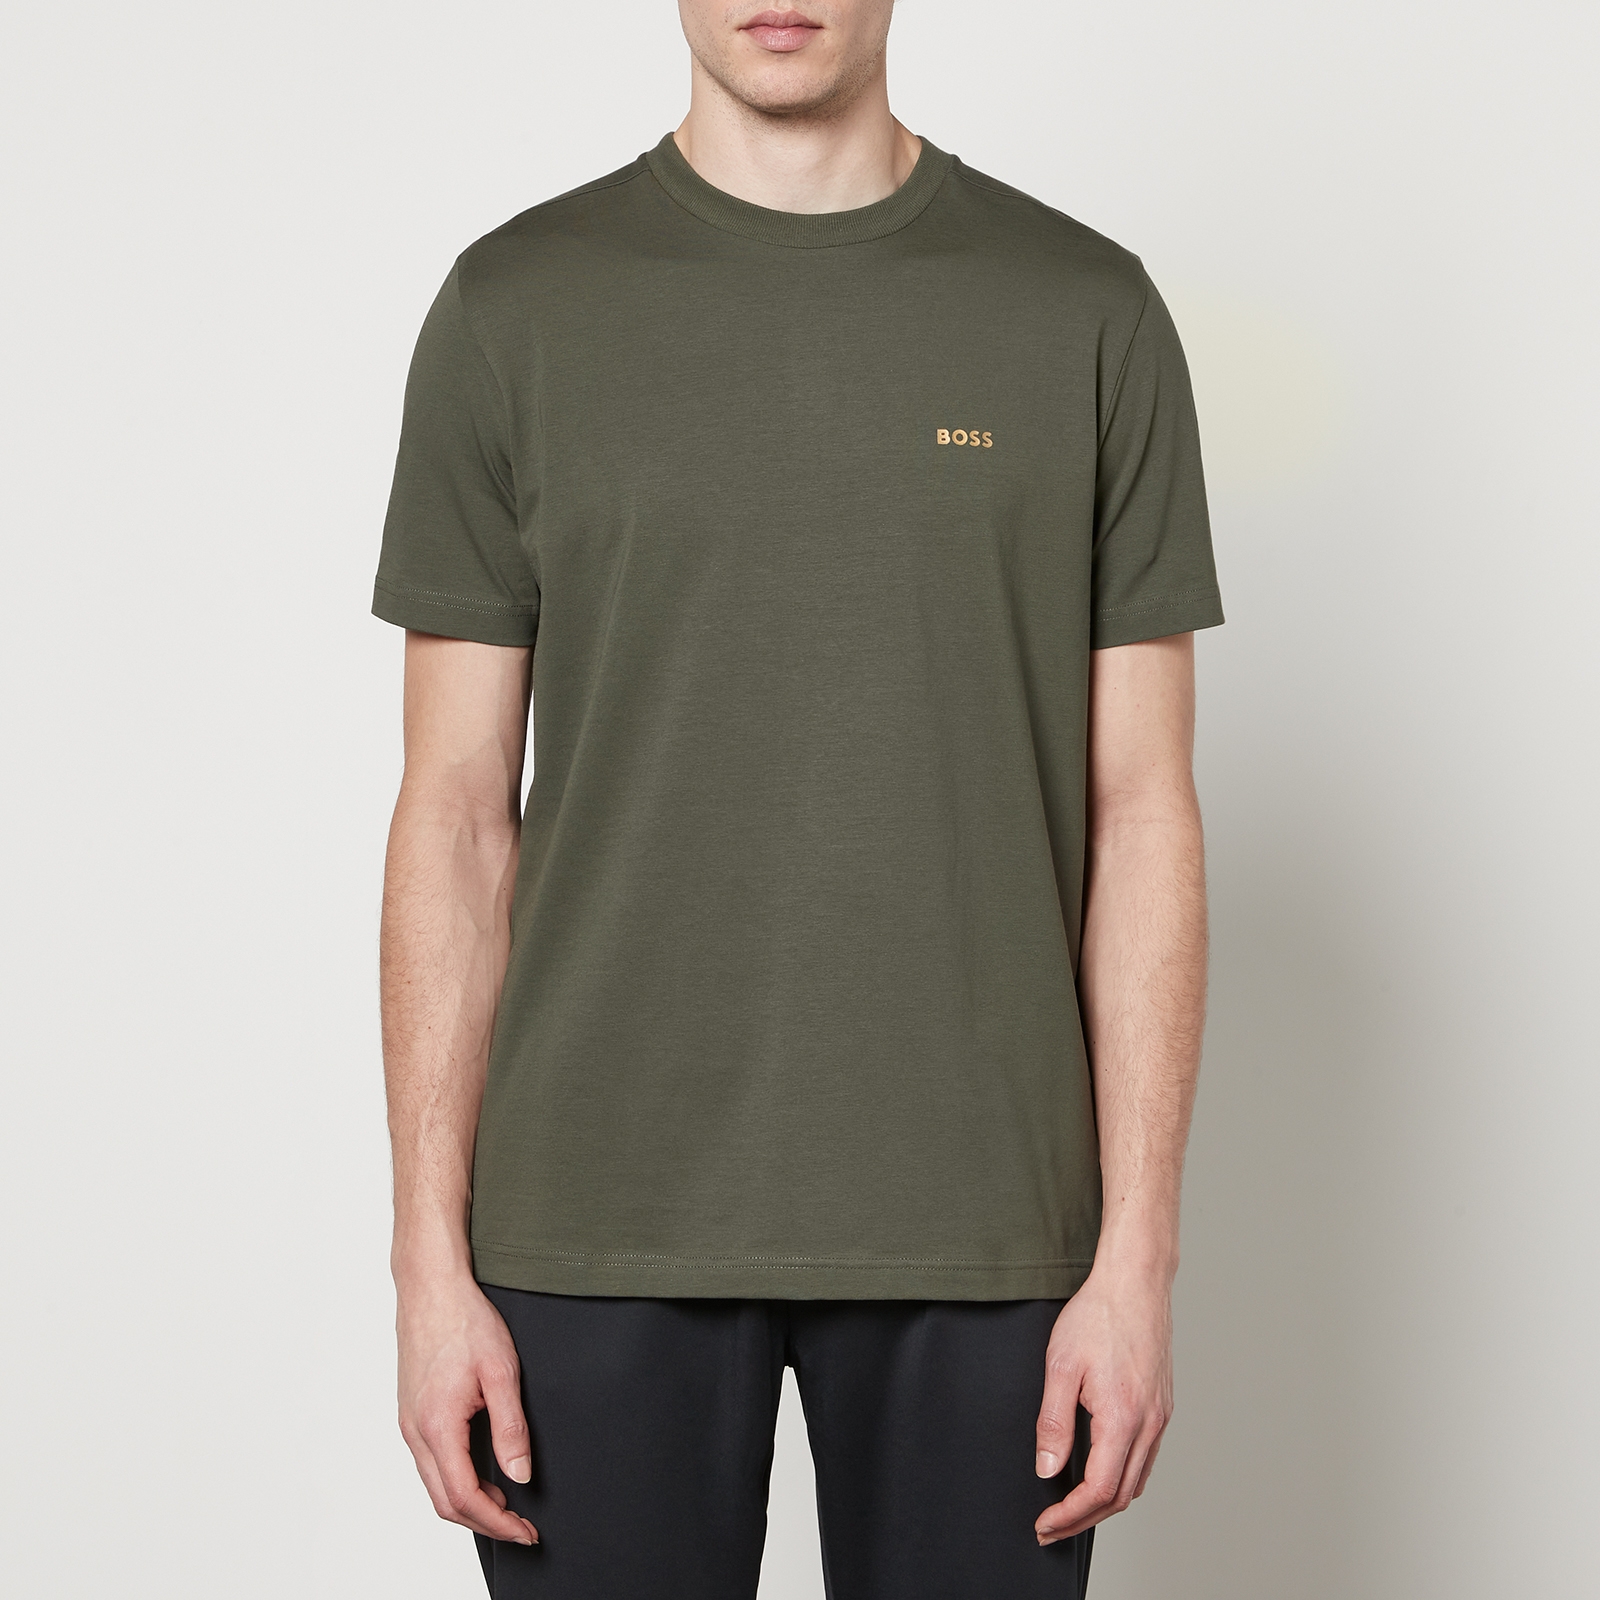 BOSS Green Tee Cotton-Jersey T-Shirt